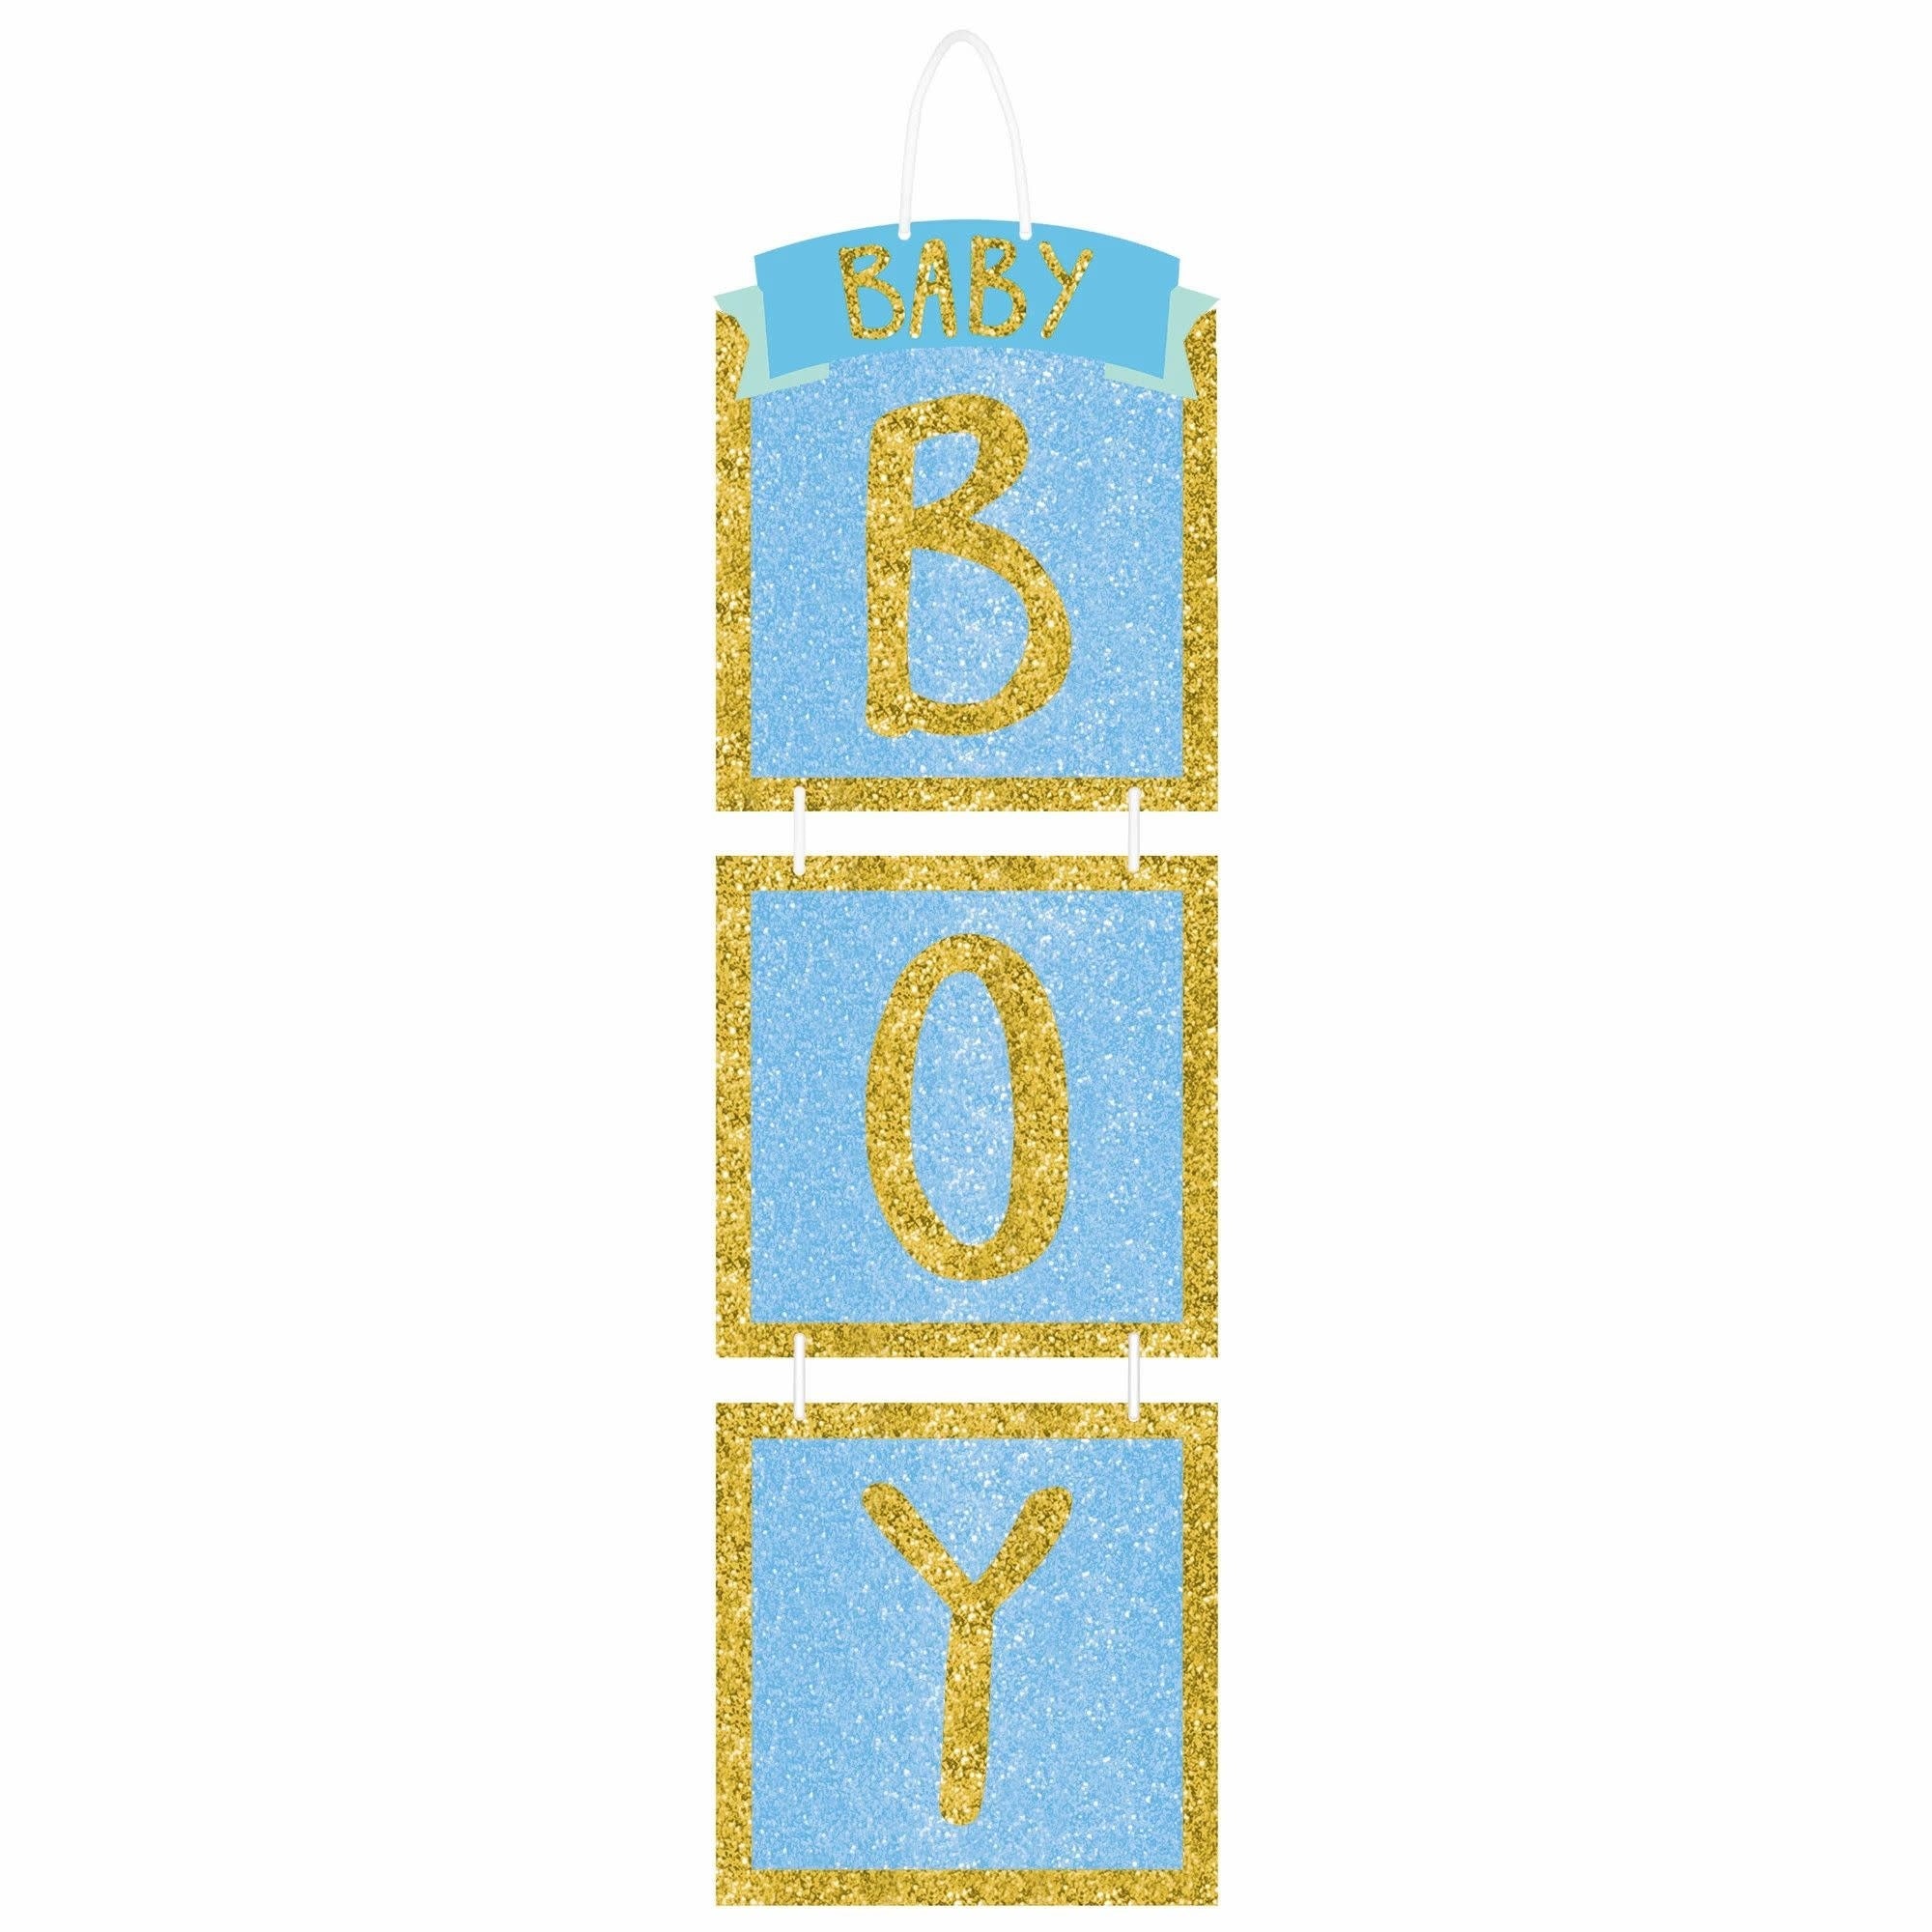 Decoration Suspendue Brillante - Baby Boy Party Shop